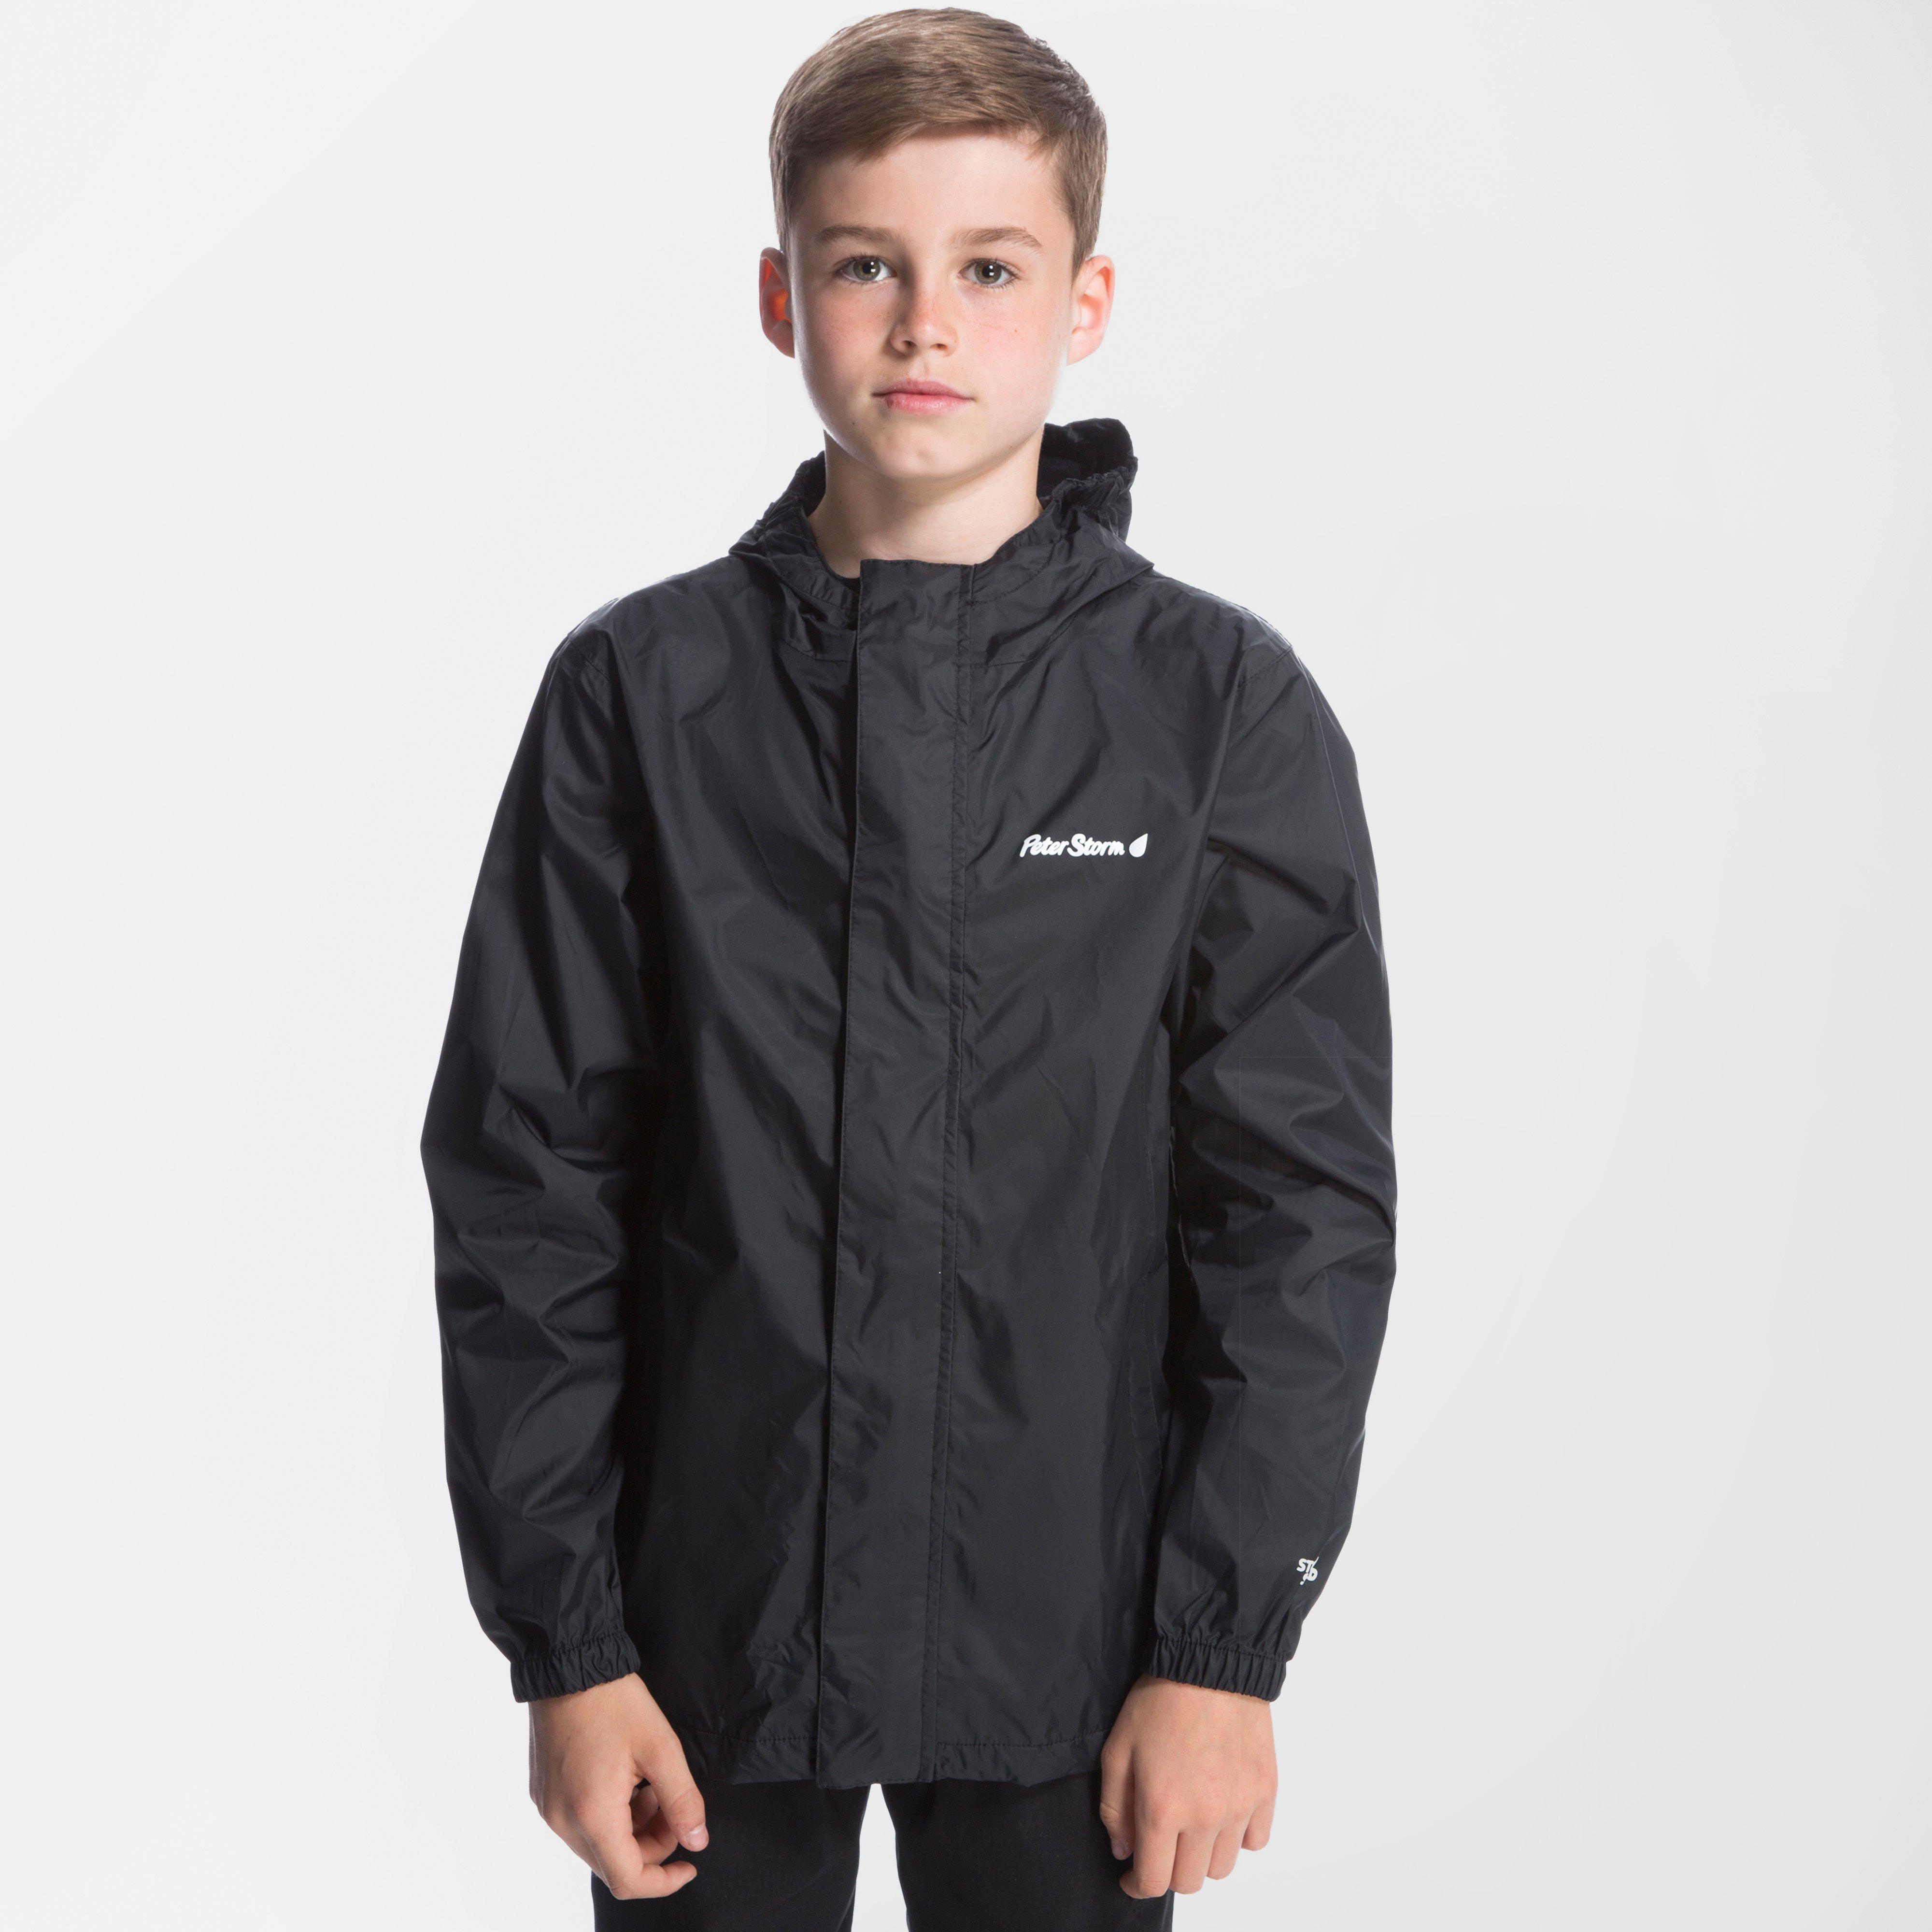 Peter Storm Boys' Packable Waterproof Jacket